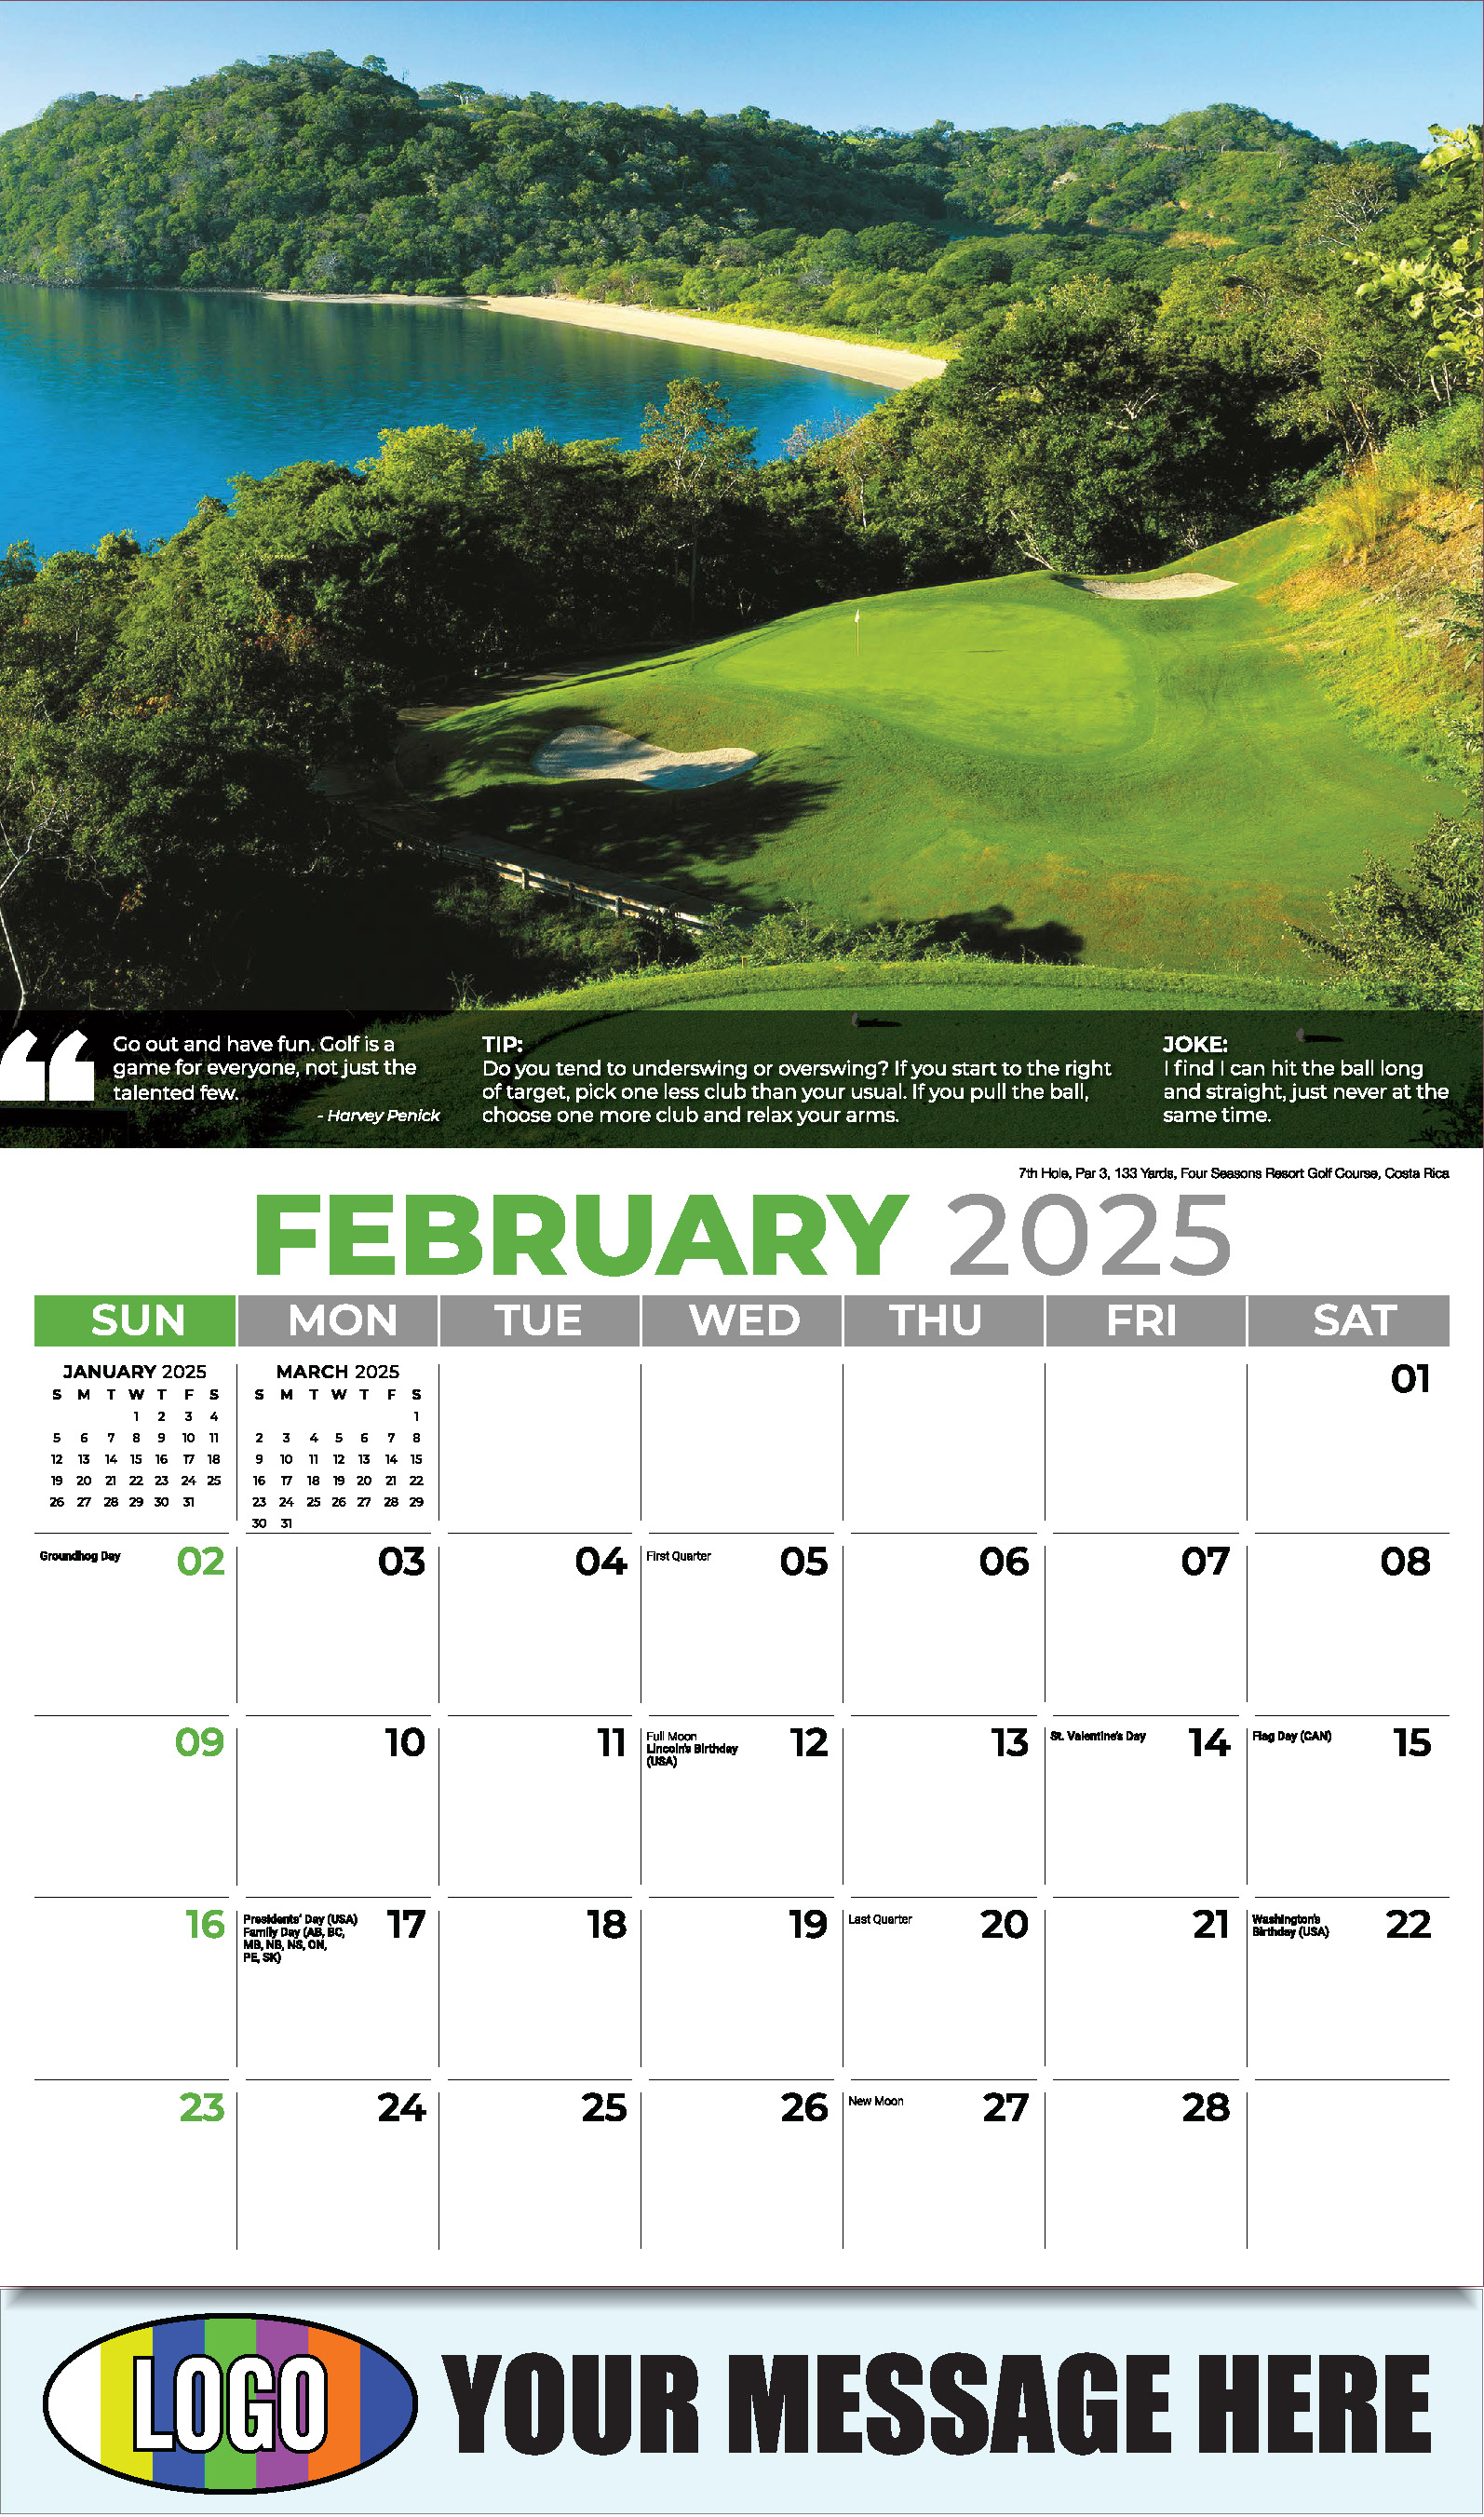 Golf Tips 2025 Business Promo Calendar - February